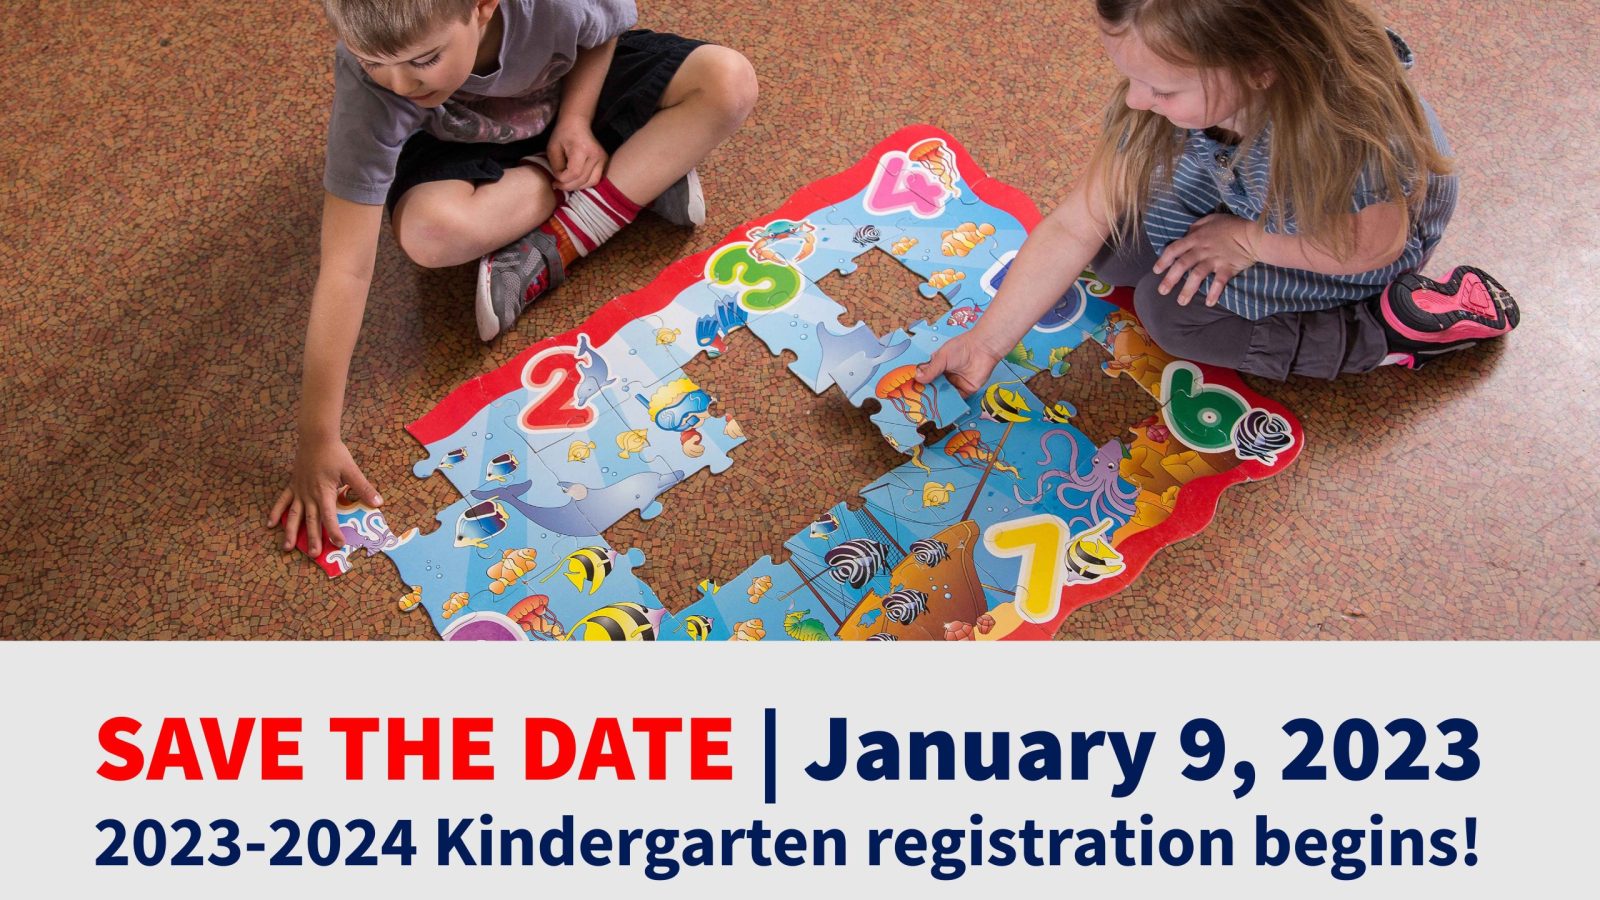 2023-2024 Kindergarten registration